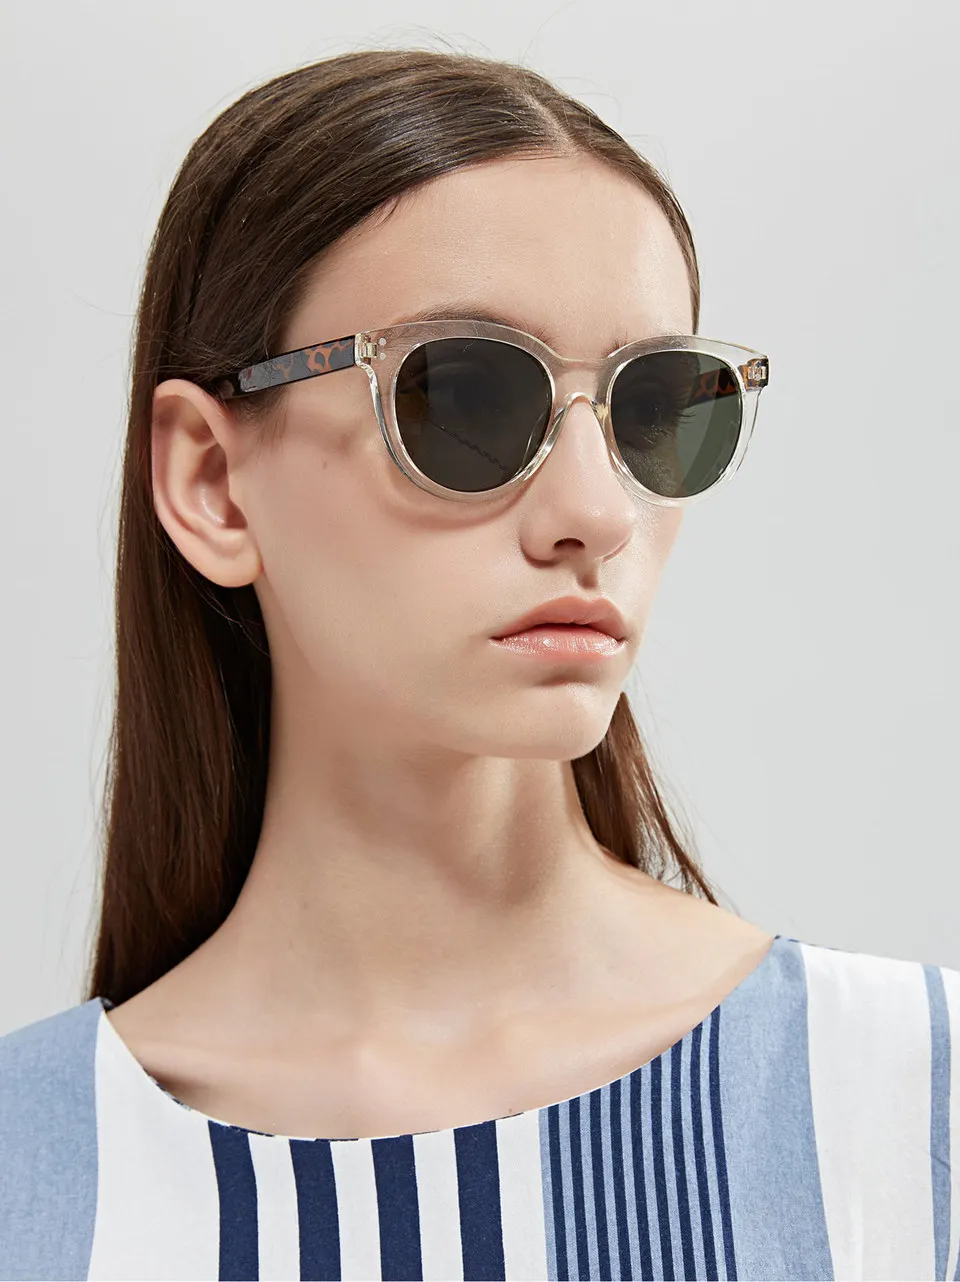 Очки Imwete, Классические солнцезащитные очки для женщин, брендовые дизайнерские солнцезащитные очки с прозрачными линзами, винтажные леопардовые женские очки UV400